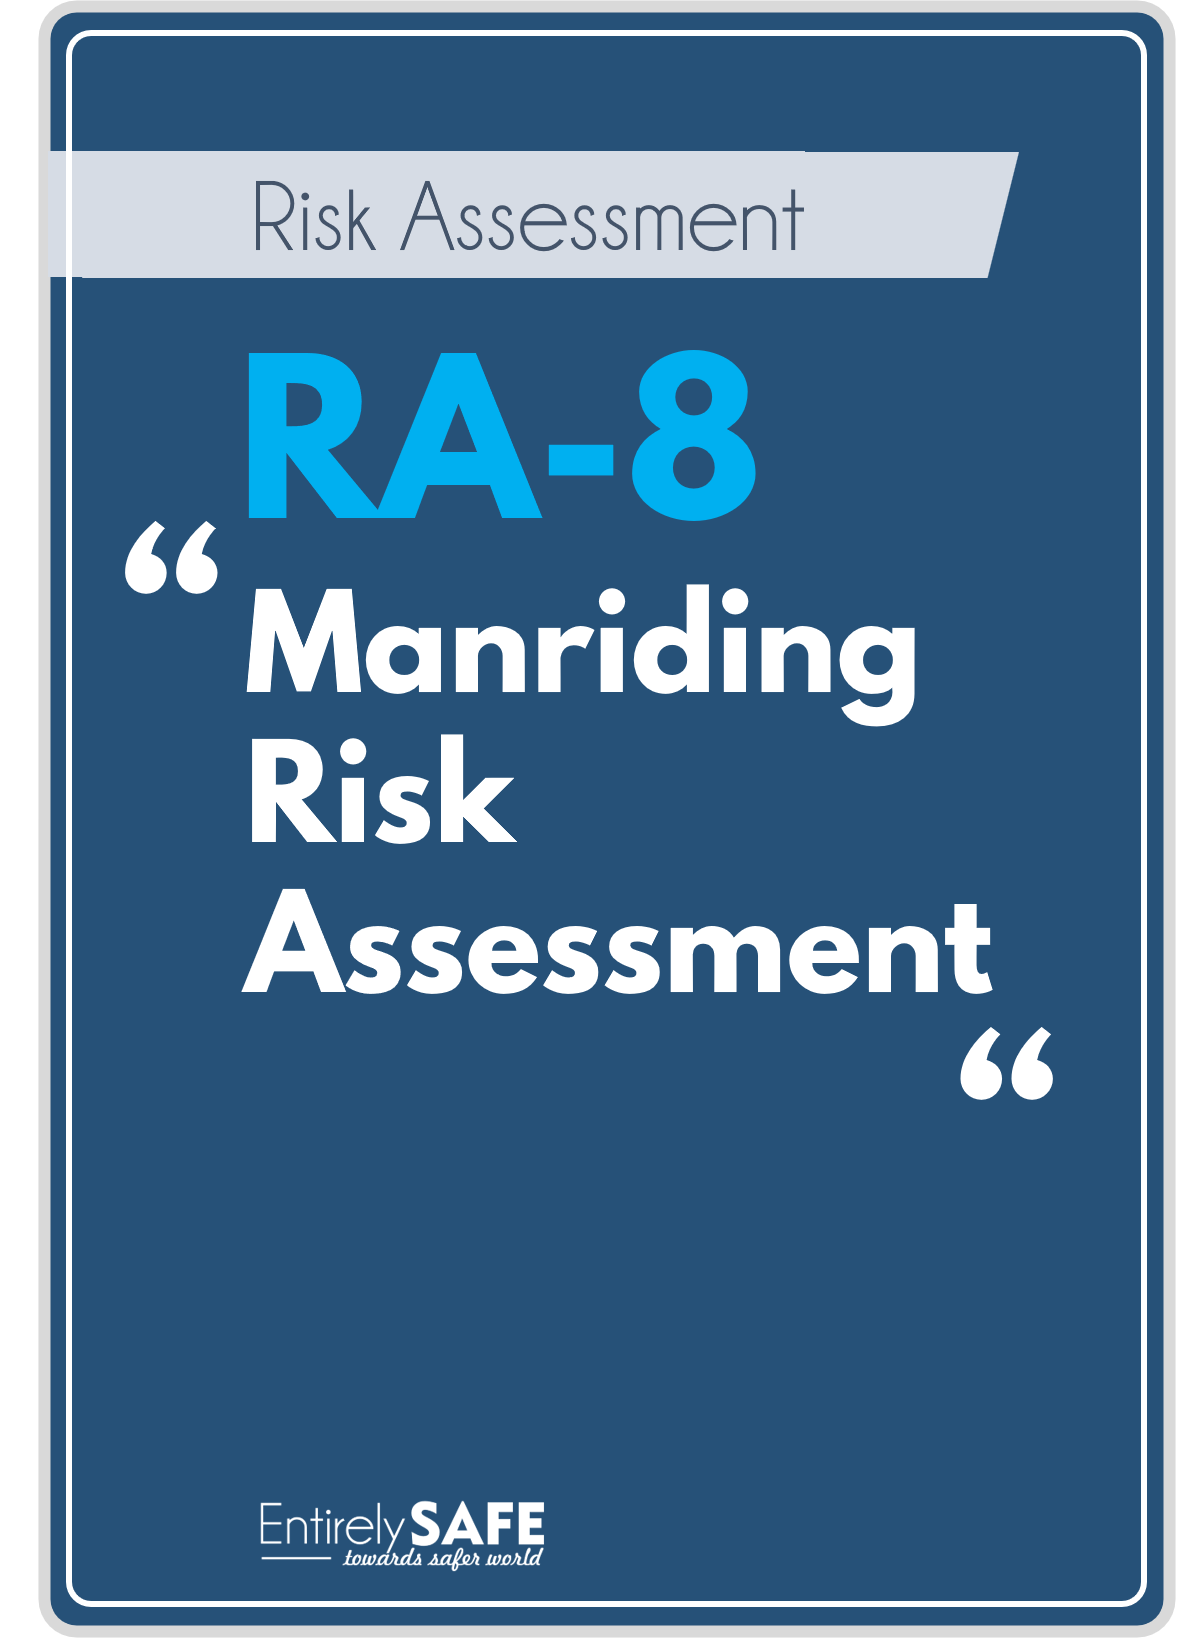 RA-8-Manriding-Risk-Assessment